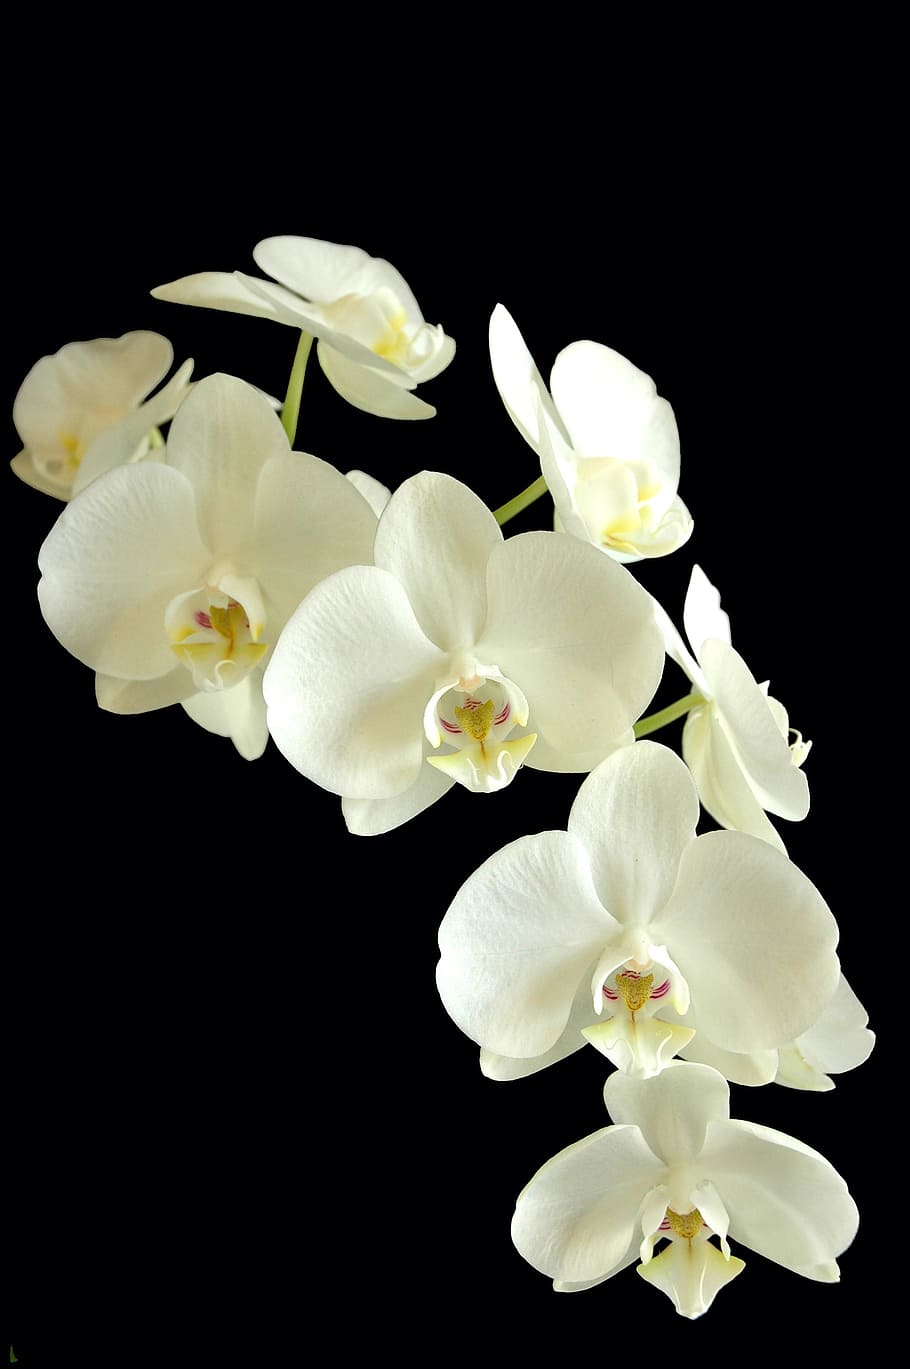 白moth蘭, ファナエロプシス, 蘭, 花, 白と黒, 植物, 開花植物, 自然の美しさ, 花びら, 鮮度